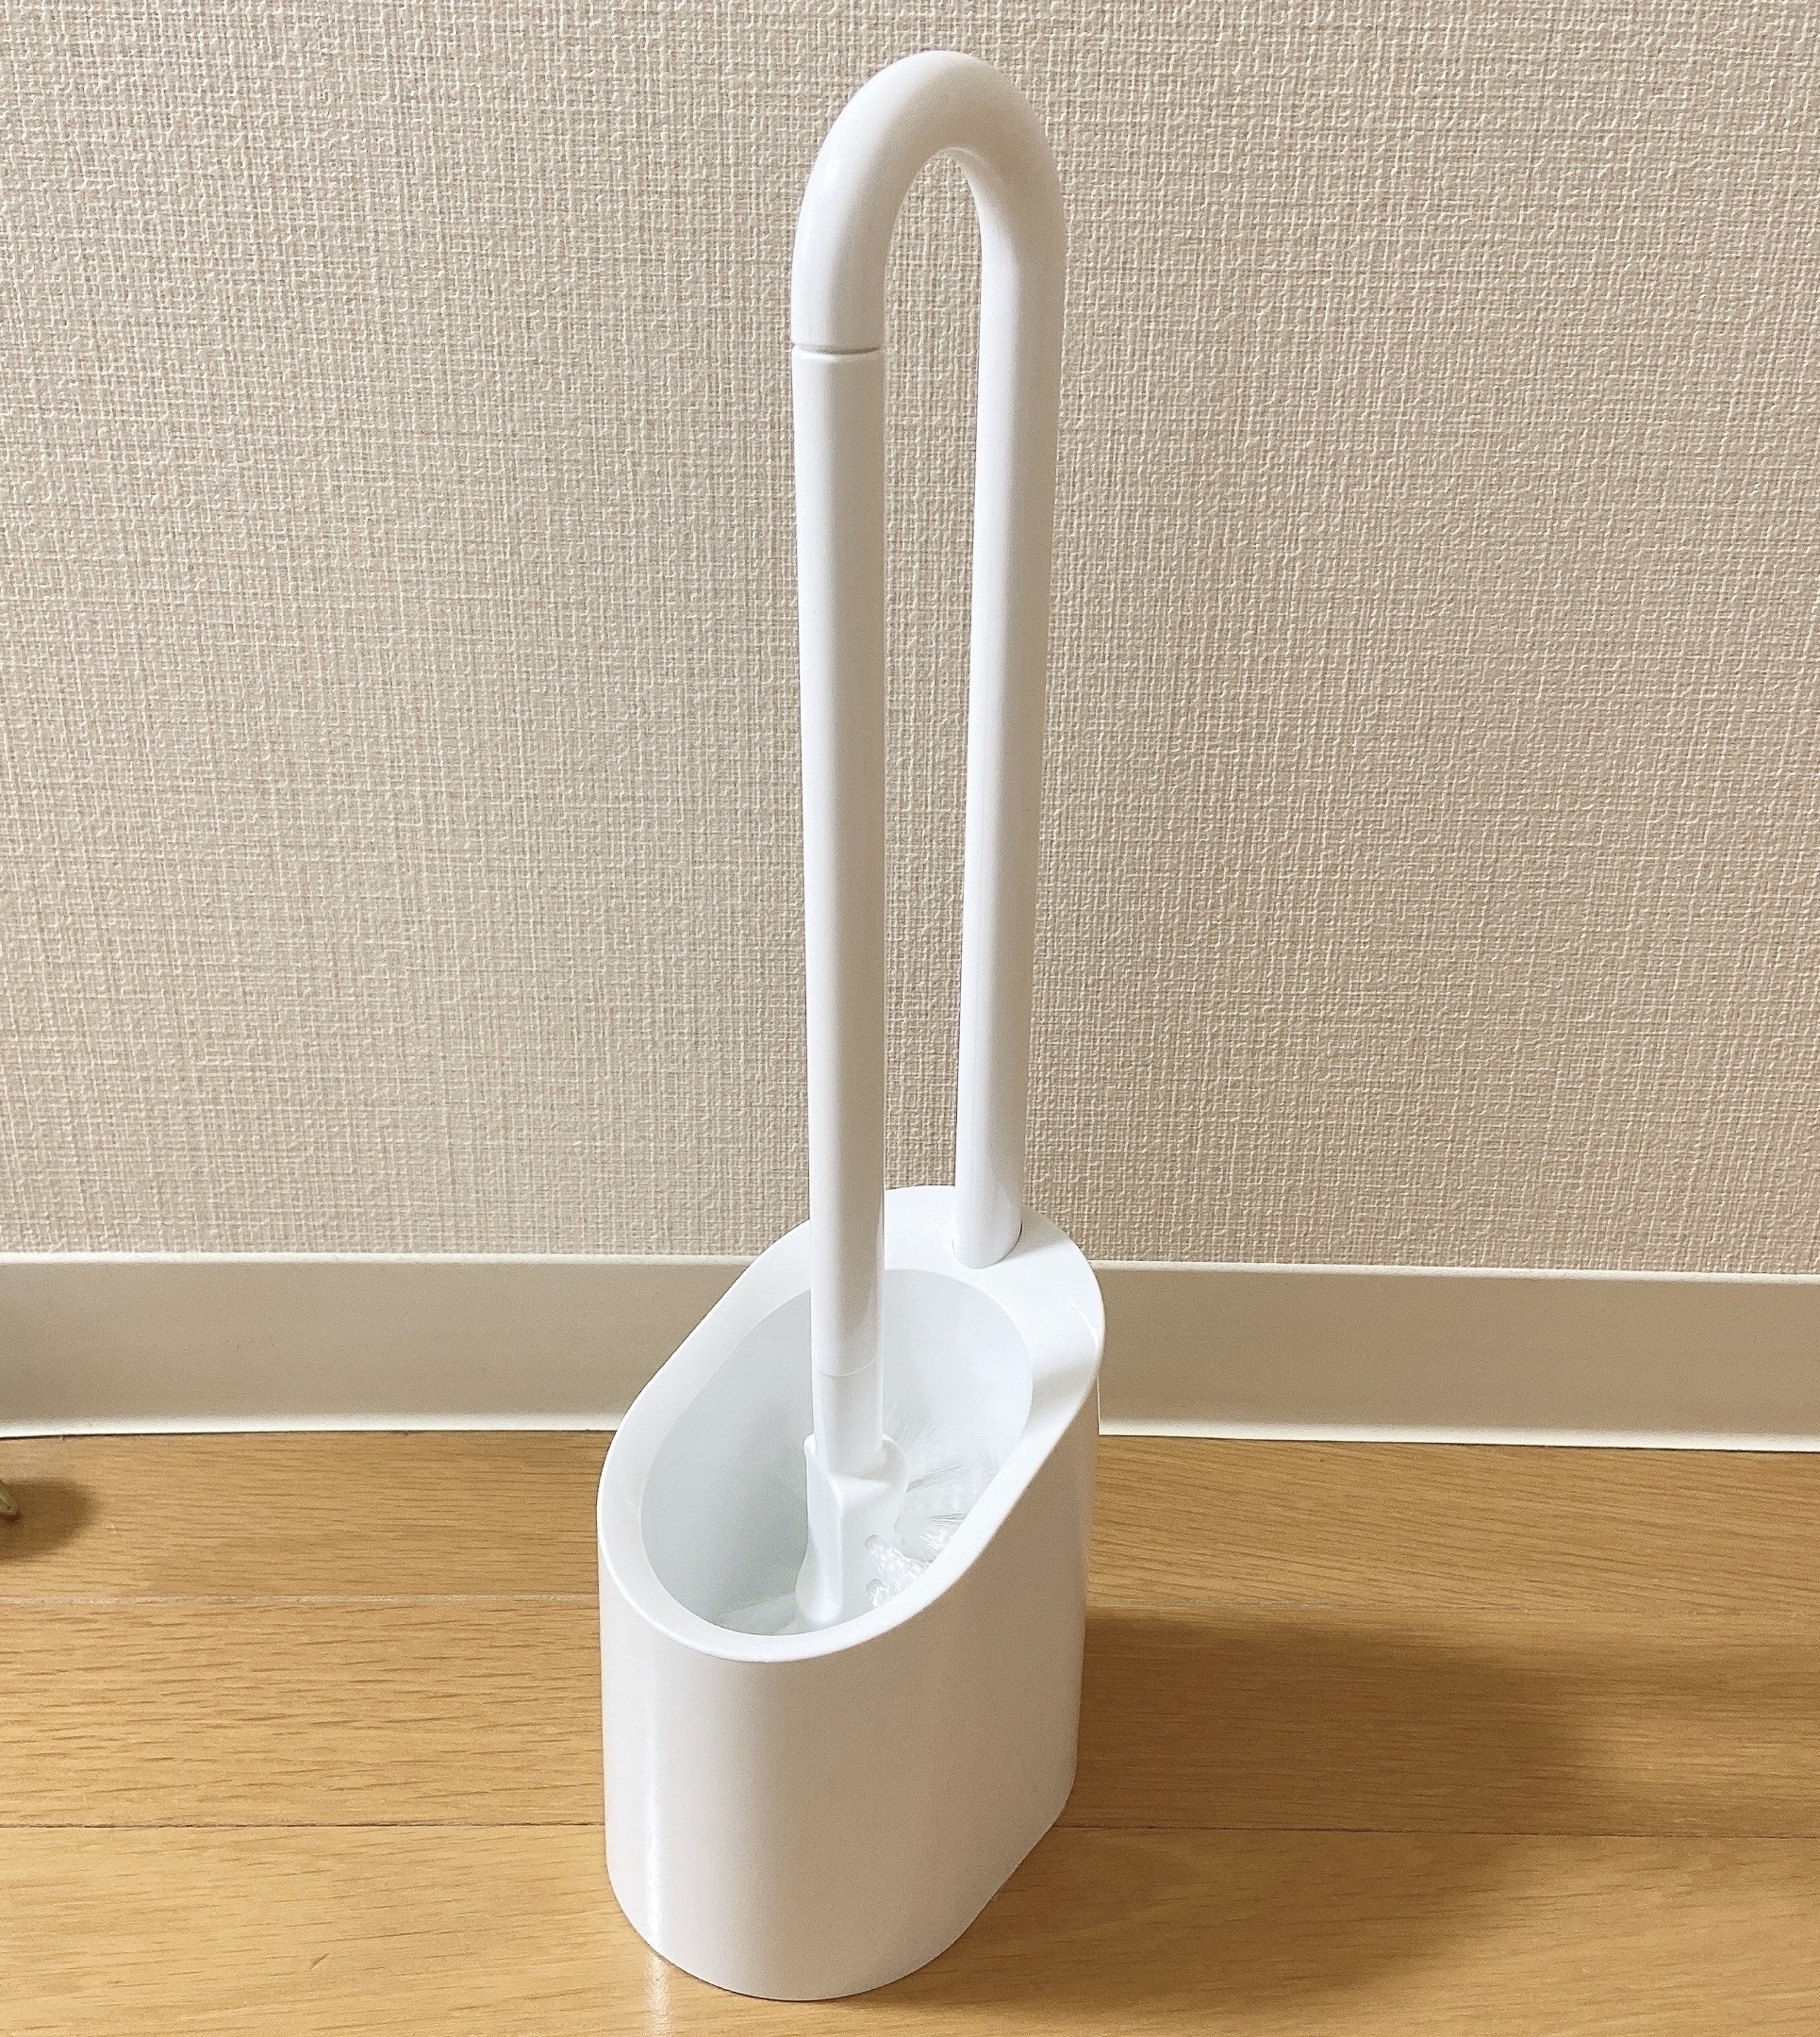 NITORI（ニトリ）のおすすめの便利グッズ「持ち運べる磁石収納トイレブラシ」